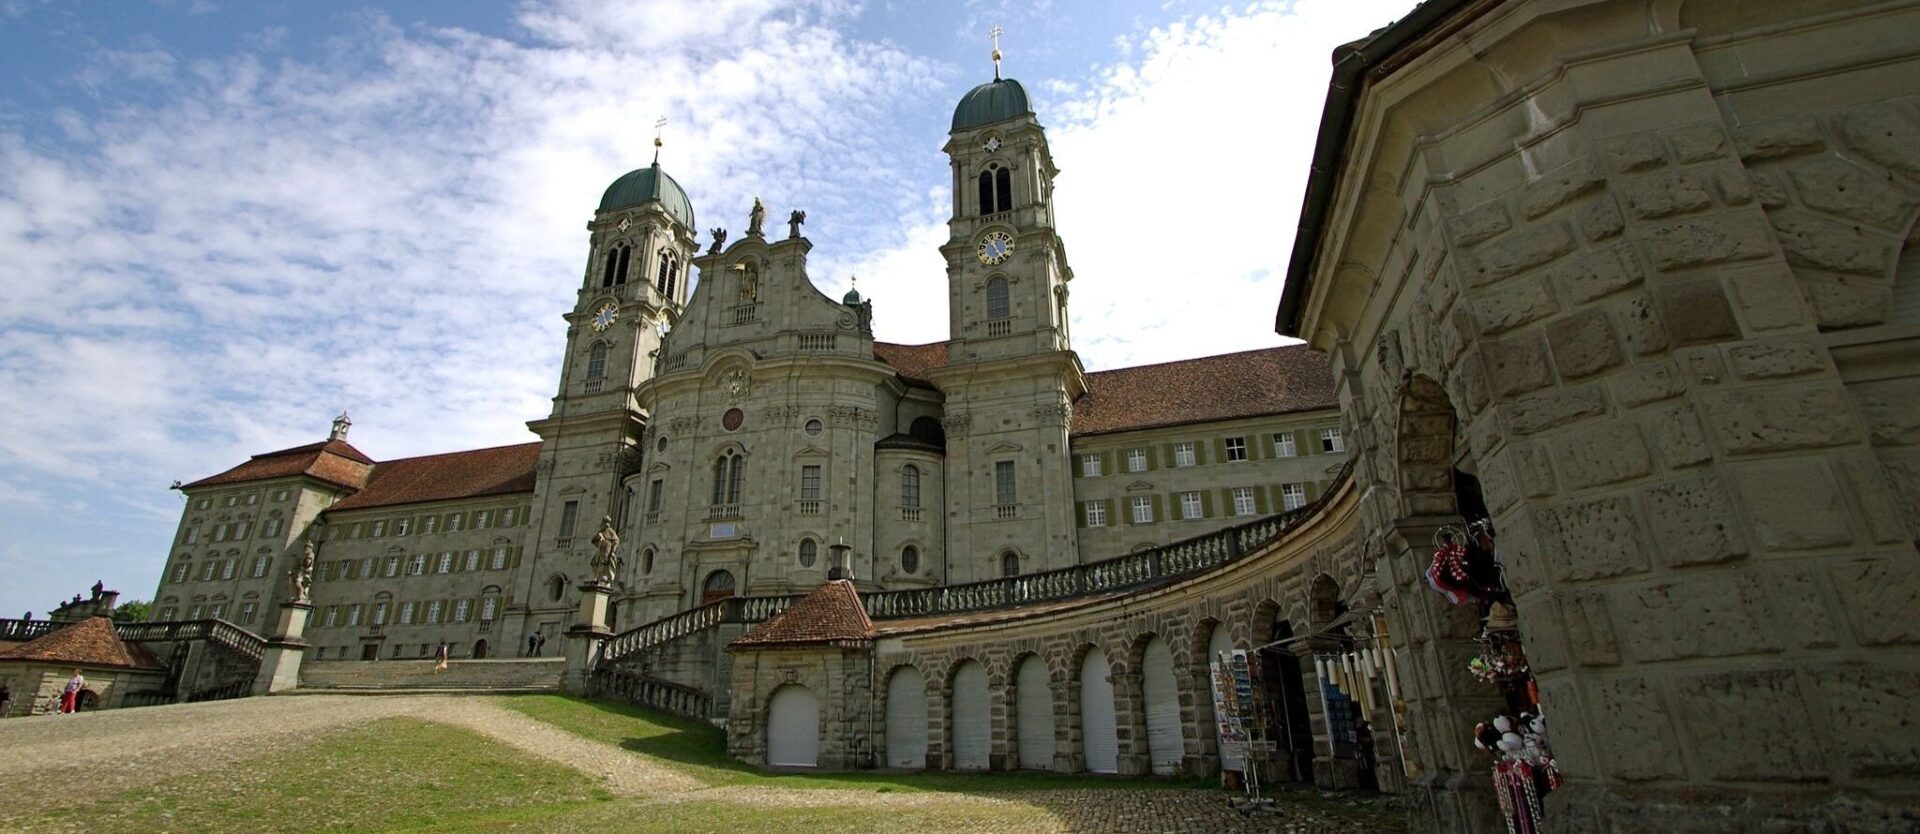 Nicole Freudiger a rencontré des jeunes suisses engagés dans la vie monacale. Abbaye d'Einsiedeln (SZ) | © Stephanie Croos/Flickr/CC BY-SA 2.0